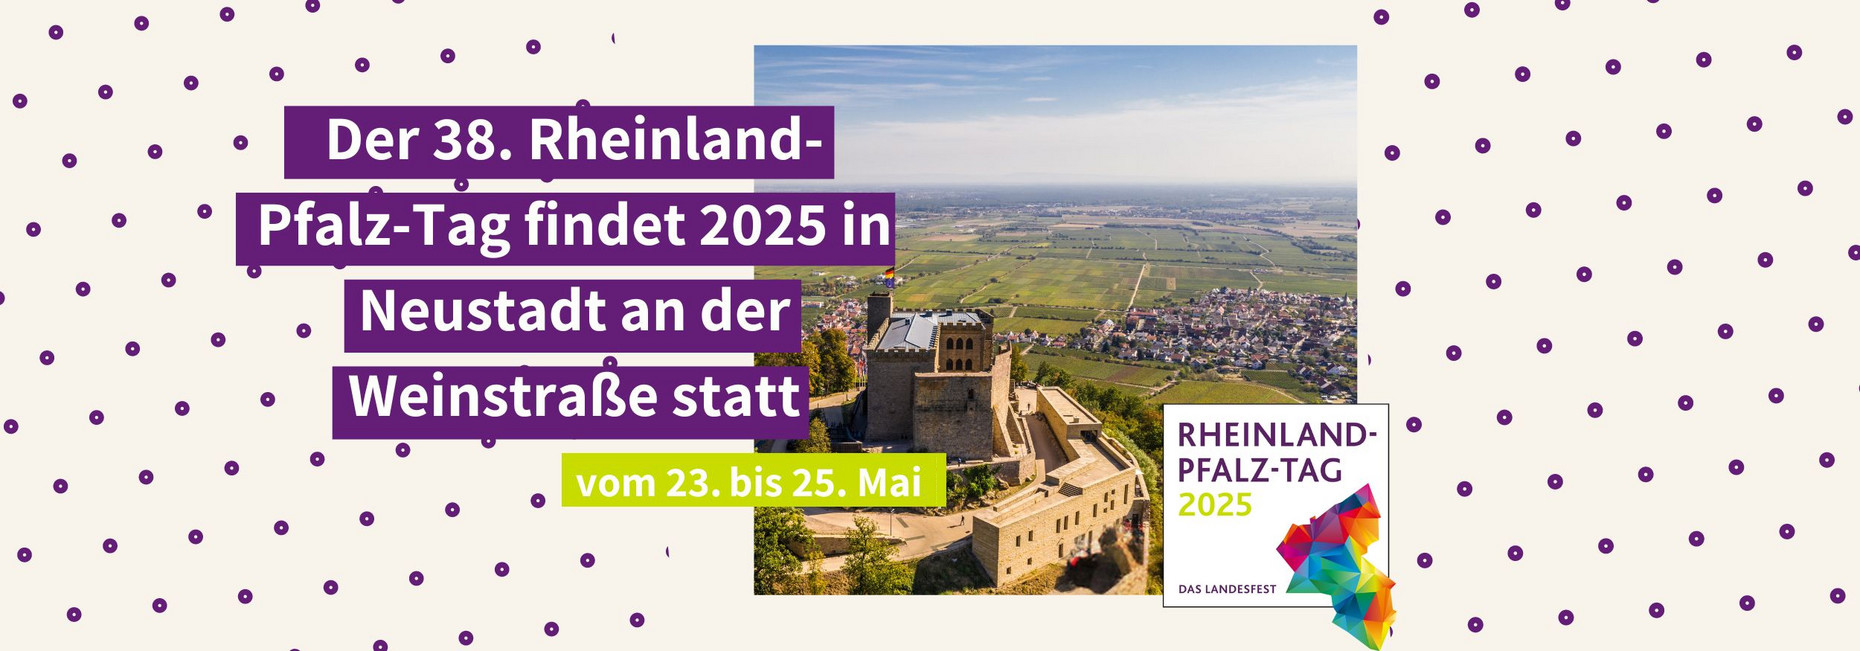 Titelgrafik RLP-Tag mit Text: Der 38. Rheinland-Pfalz-Tag findet 2025 in Neustadt an der Weinstraße statt vom 23. bis 25. Mai.